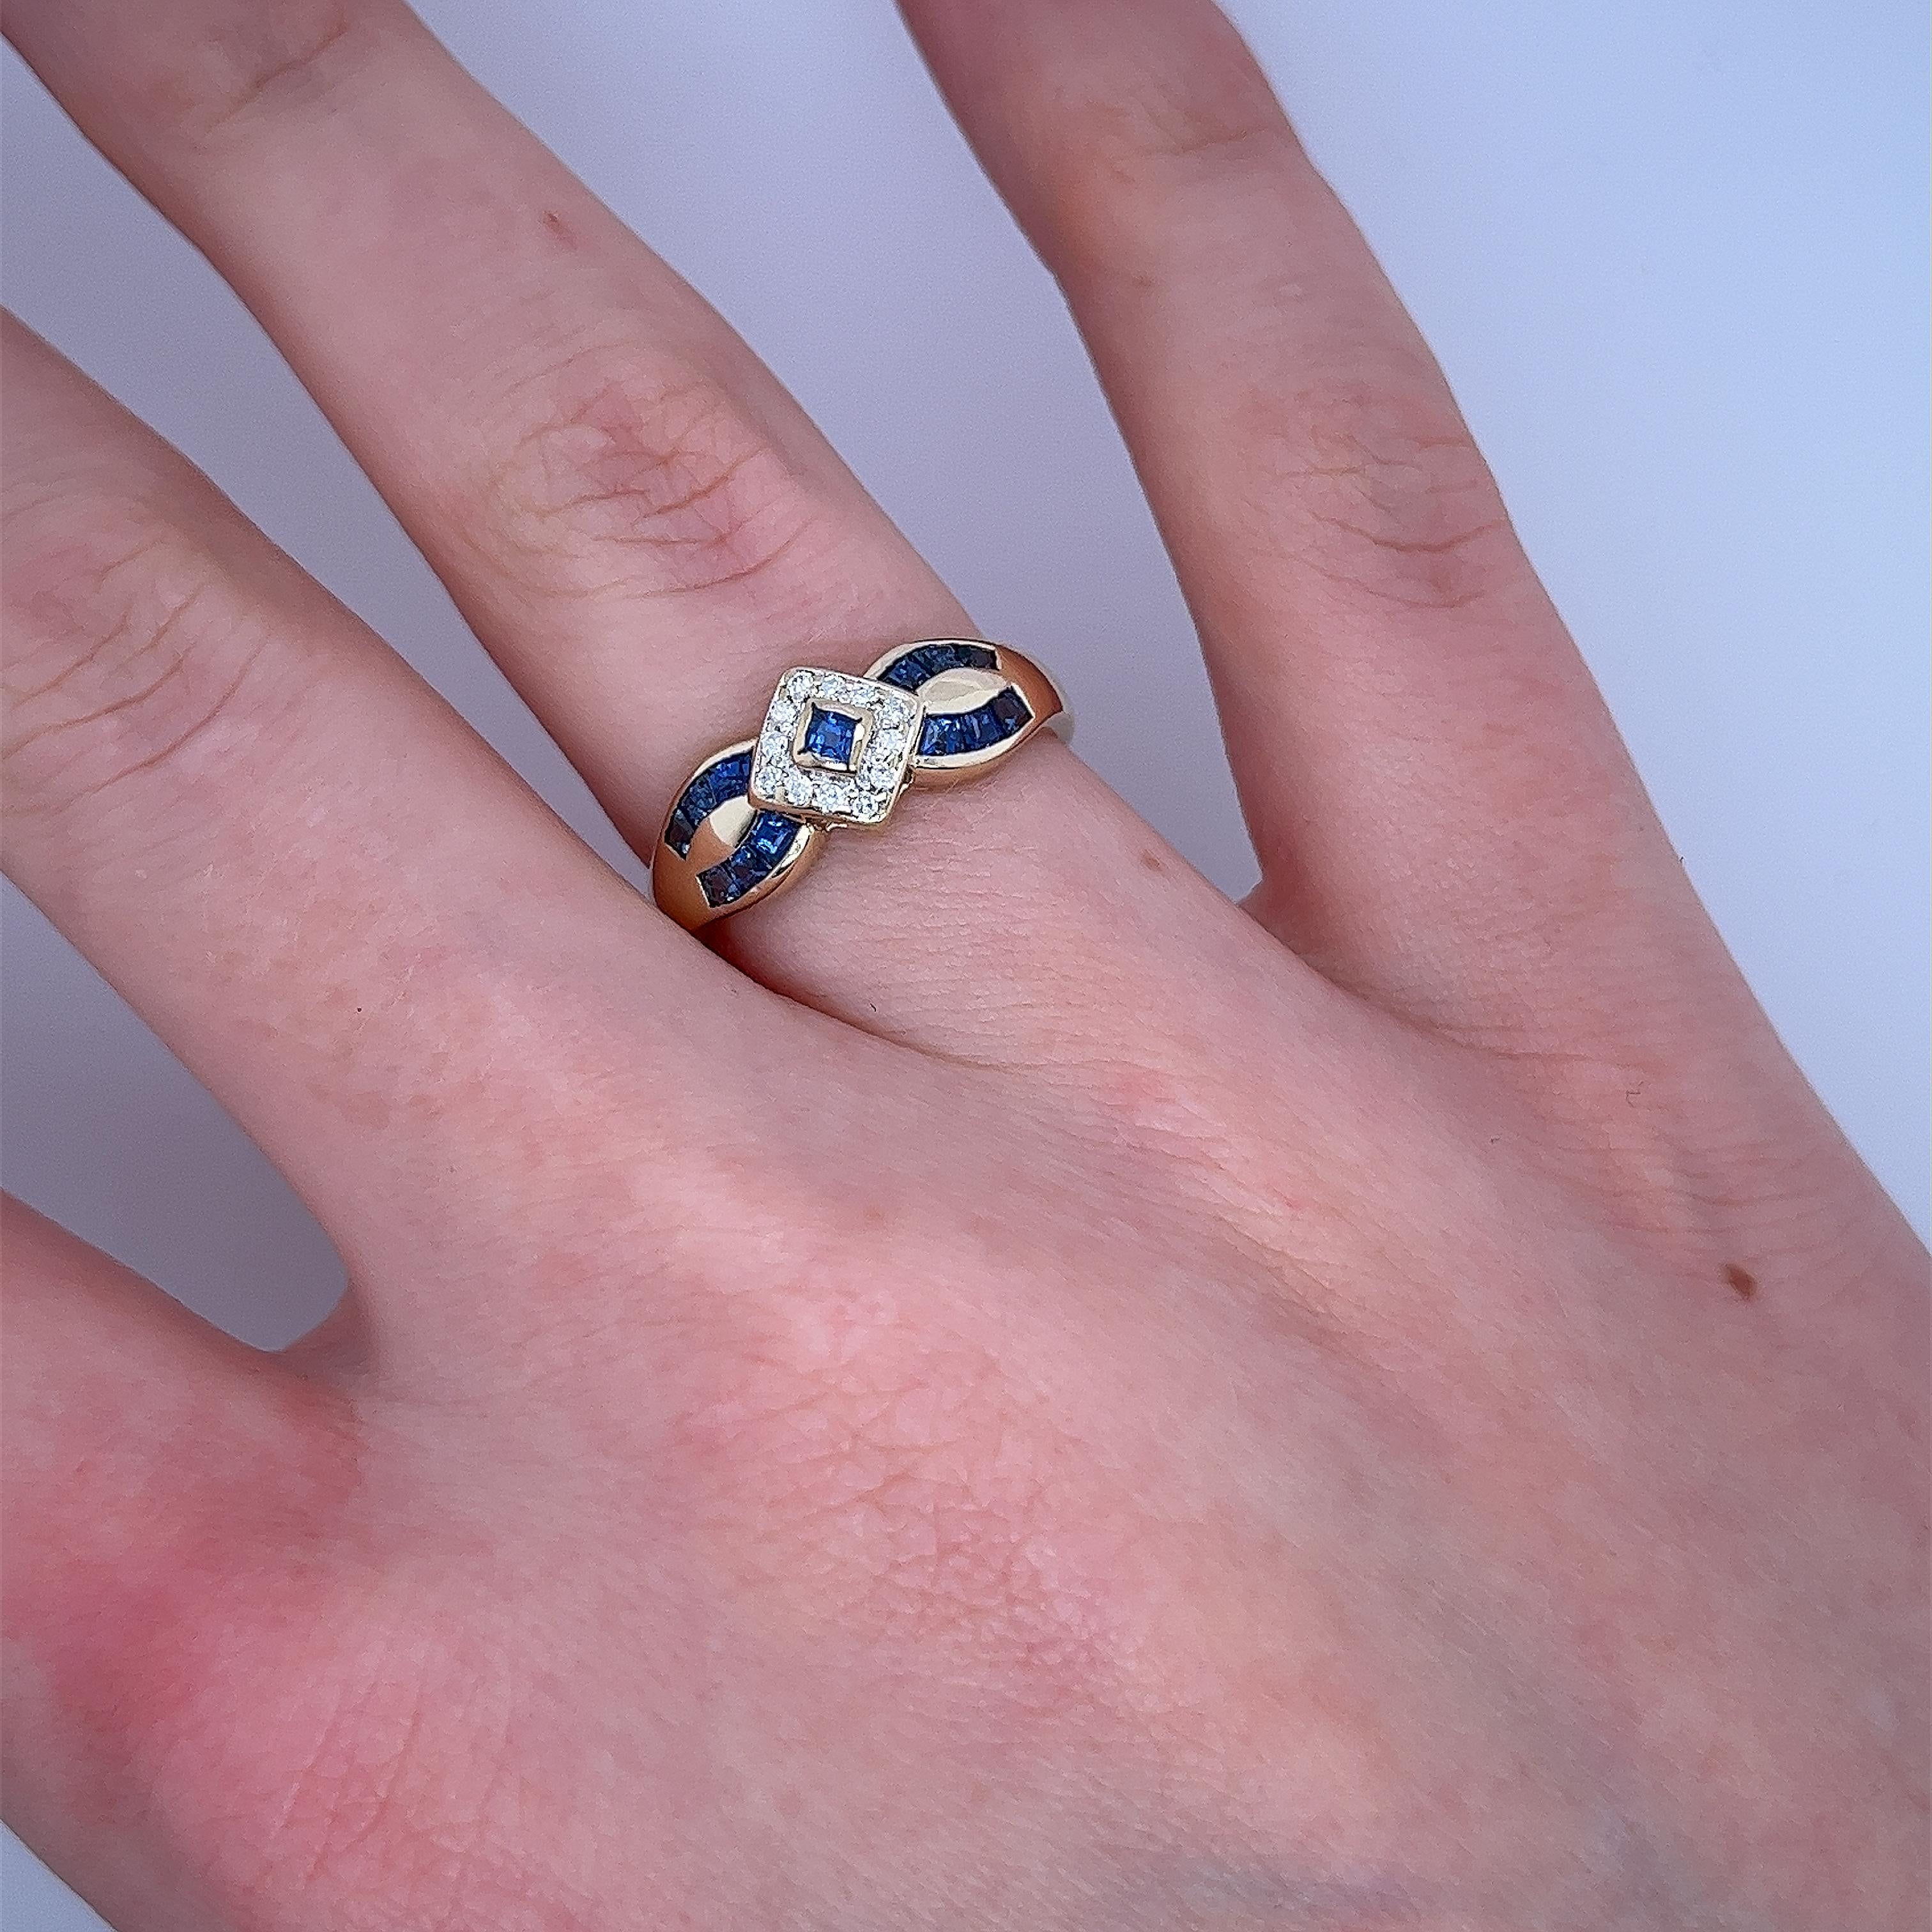 Ein eleganter und einzigartiger Vintage-Ring mit Diamanten und Saphiren, 
besetzt mit 0,12ct runden Diamanten im Brillantschliff und quadratischen Saphiren
in einer Fassung aus 18 Karat Gelb- und Weißgold.
Gesamtgewicht der Diamanten: 0,12ct
Farbe